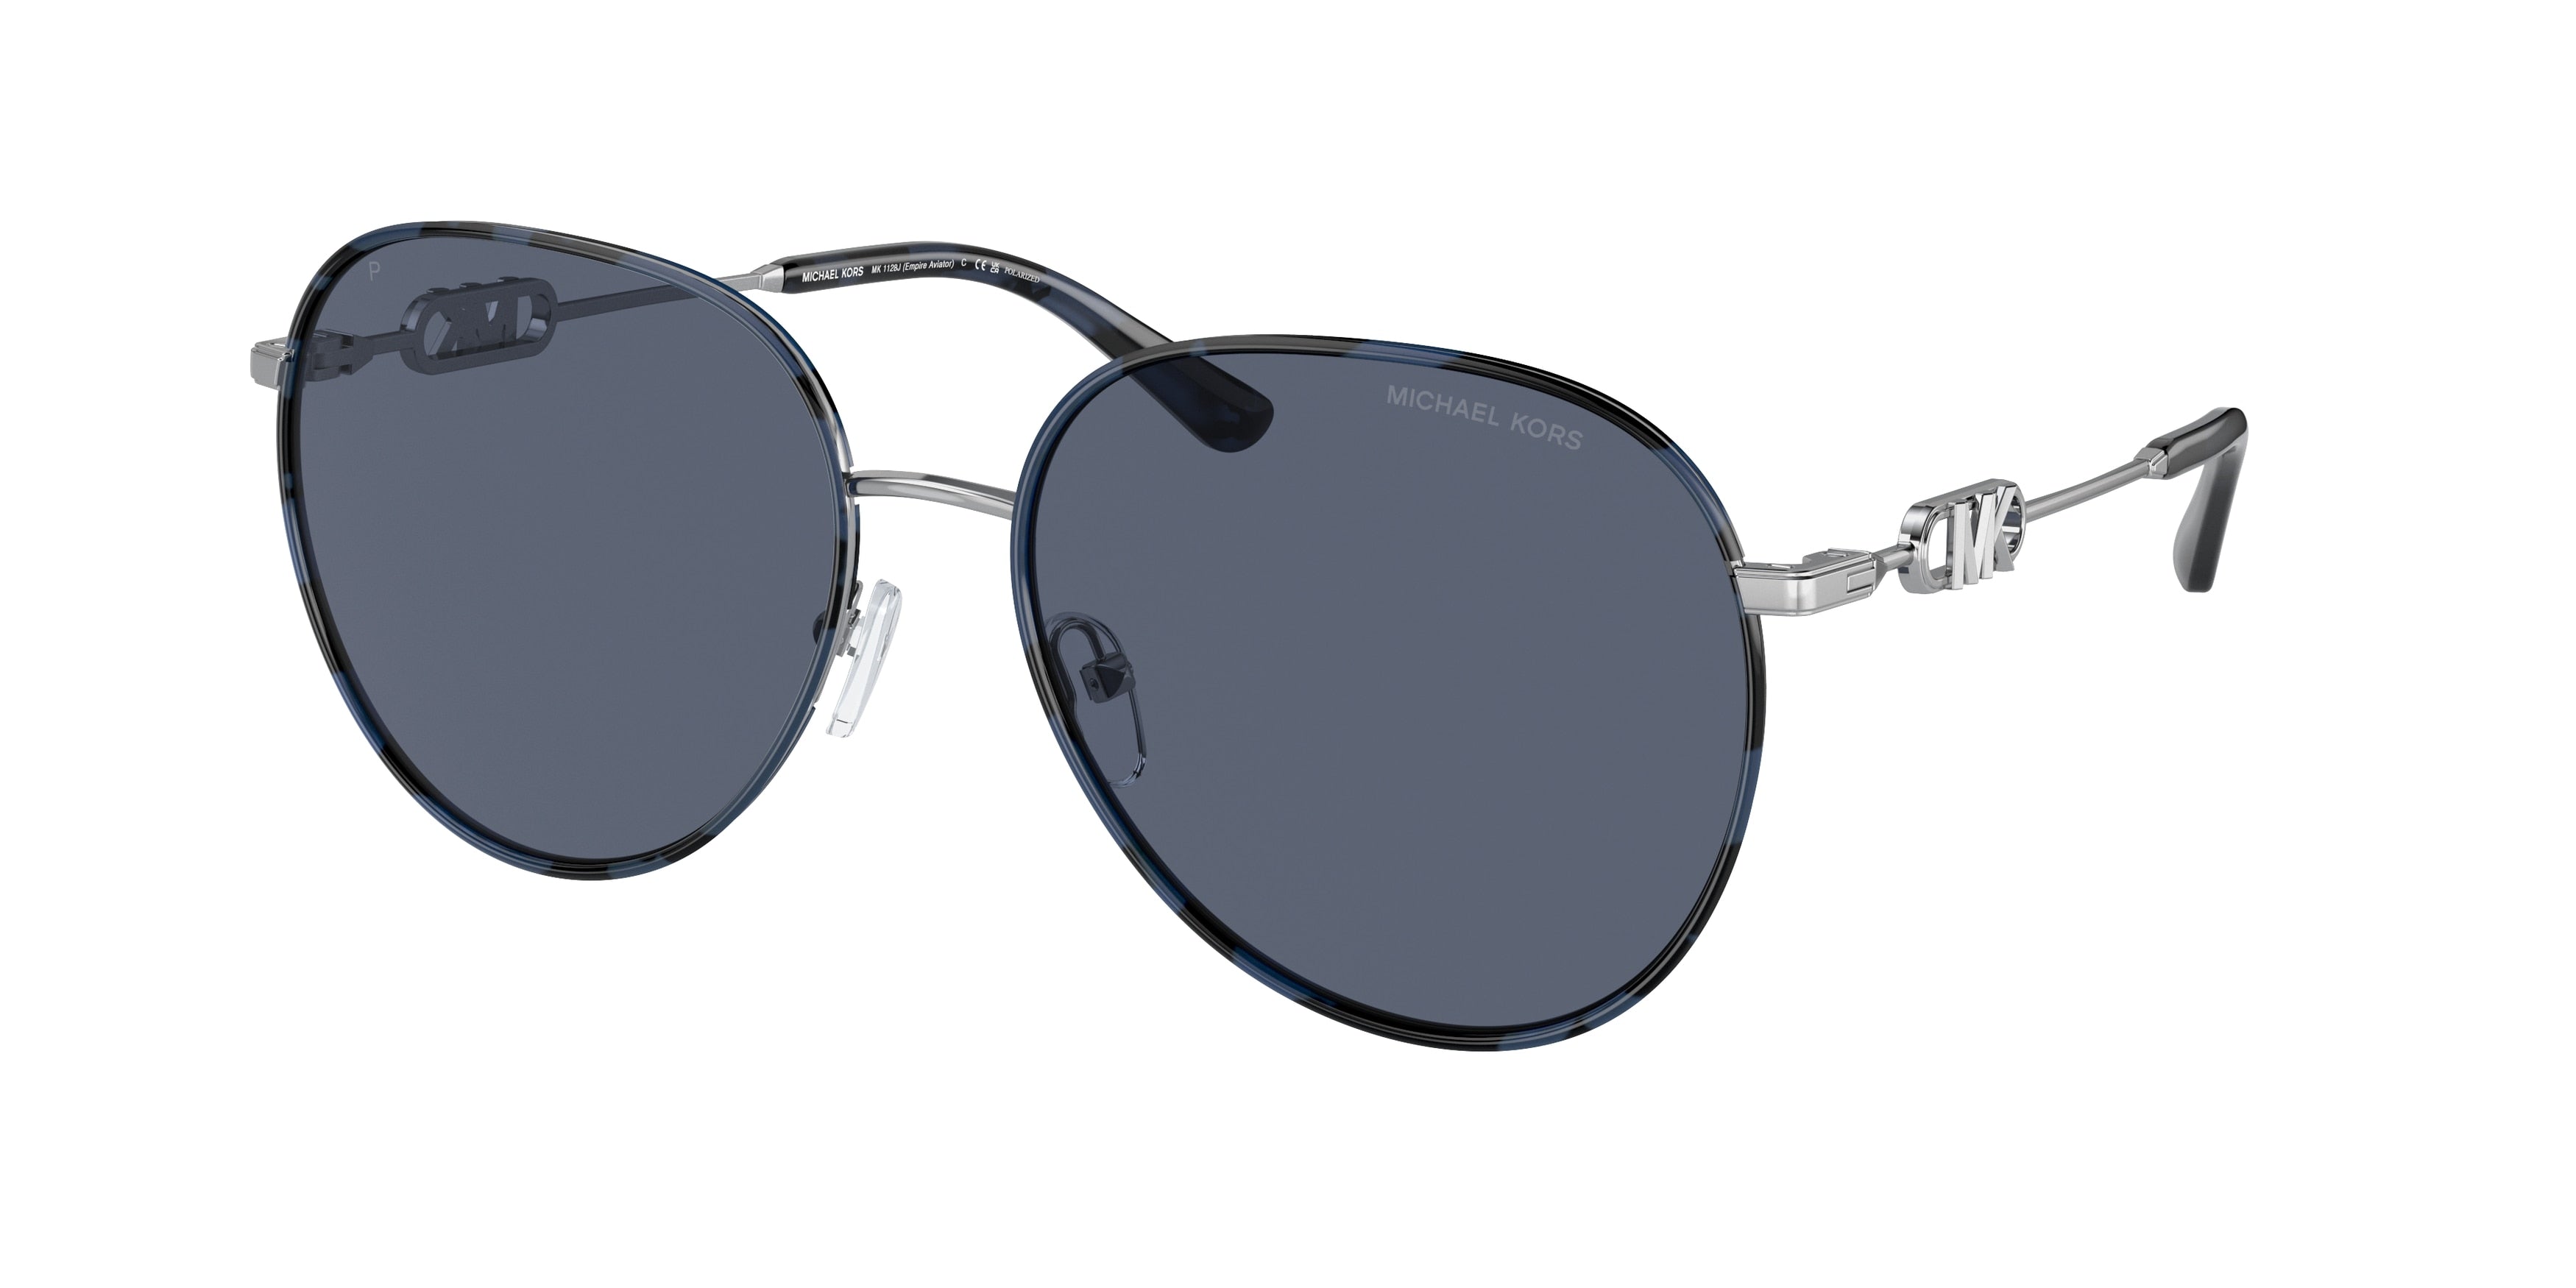 Michael Kors EMPIRE MK1128J Pilot Sunglasses  10158S-Silver/Blue Tortoise 58-145-17 - Color Map Silver